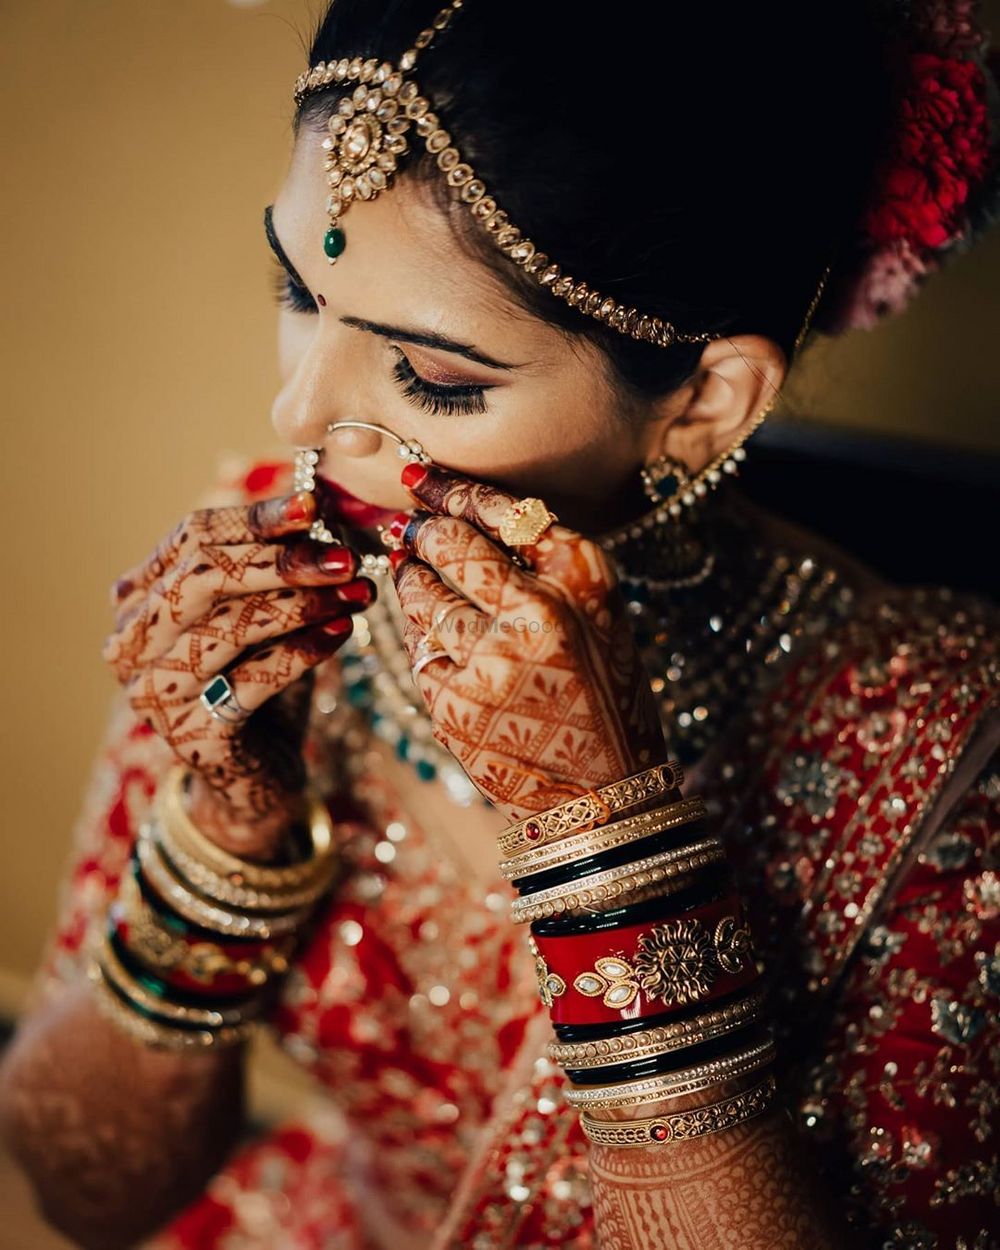 Photo By Sayali Samant Makeup Artistry - Bridal Makeup